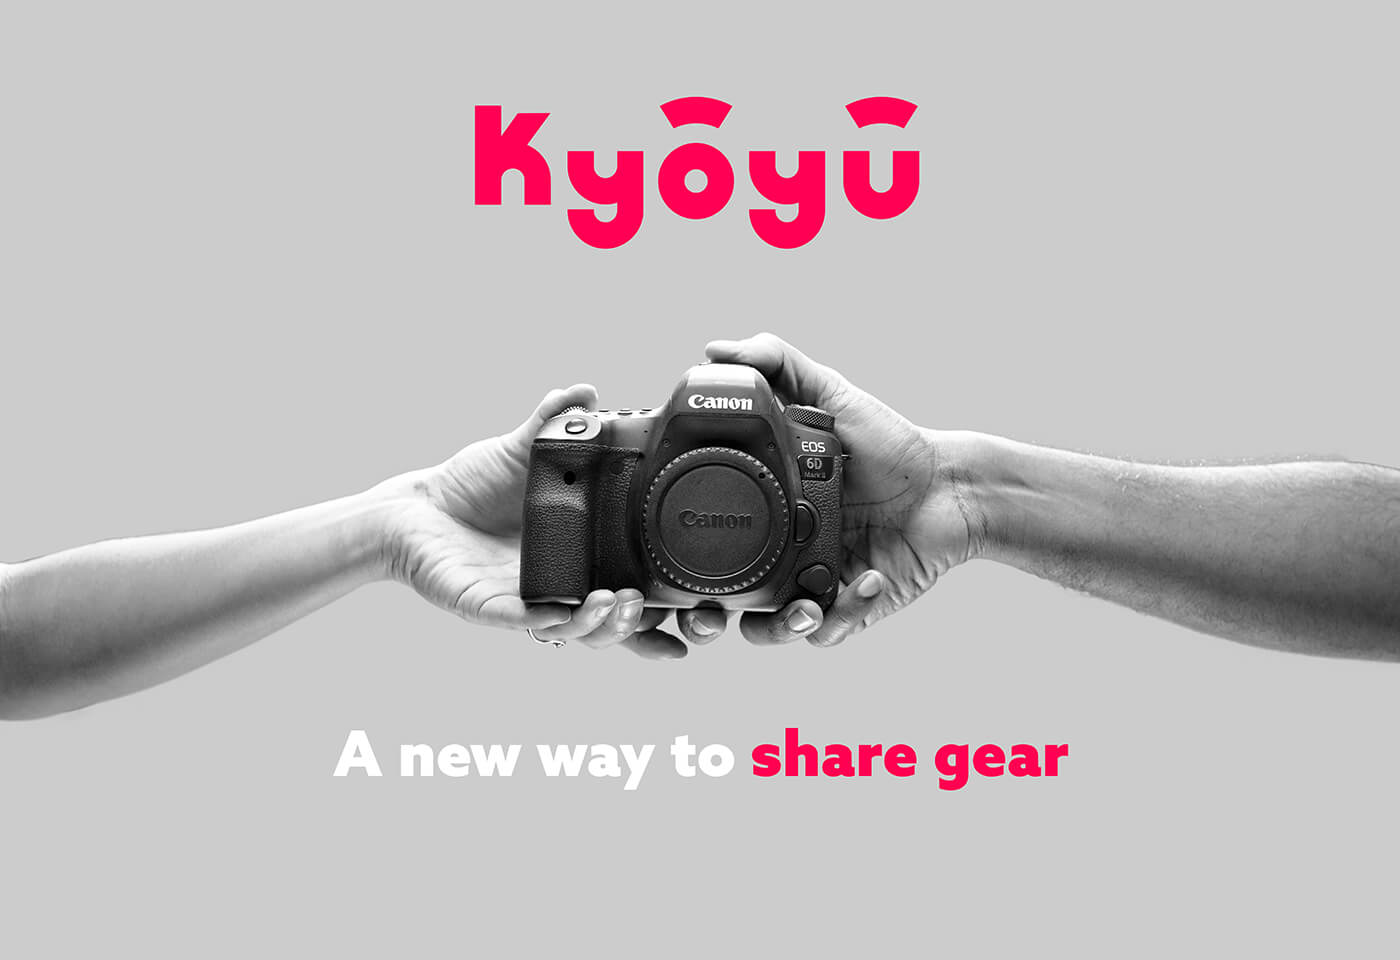 Kyoyu promo image